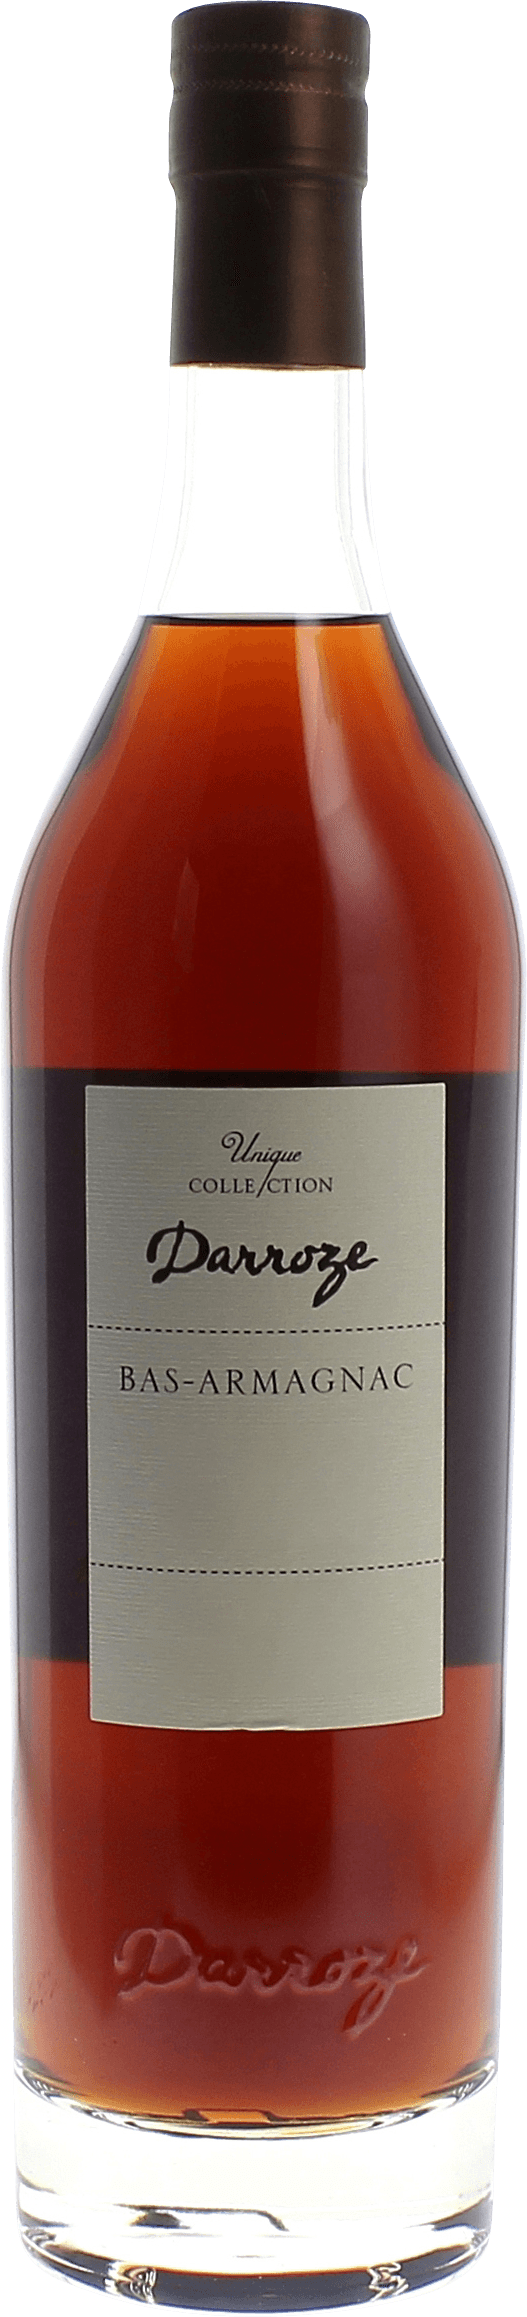 Domaine de rieston 49,5 1996  Bas Armagnac, DARROZE  Francis Bas Armagnac